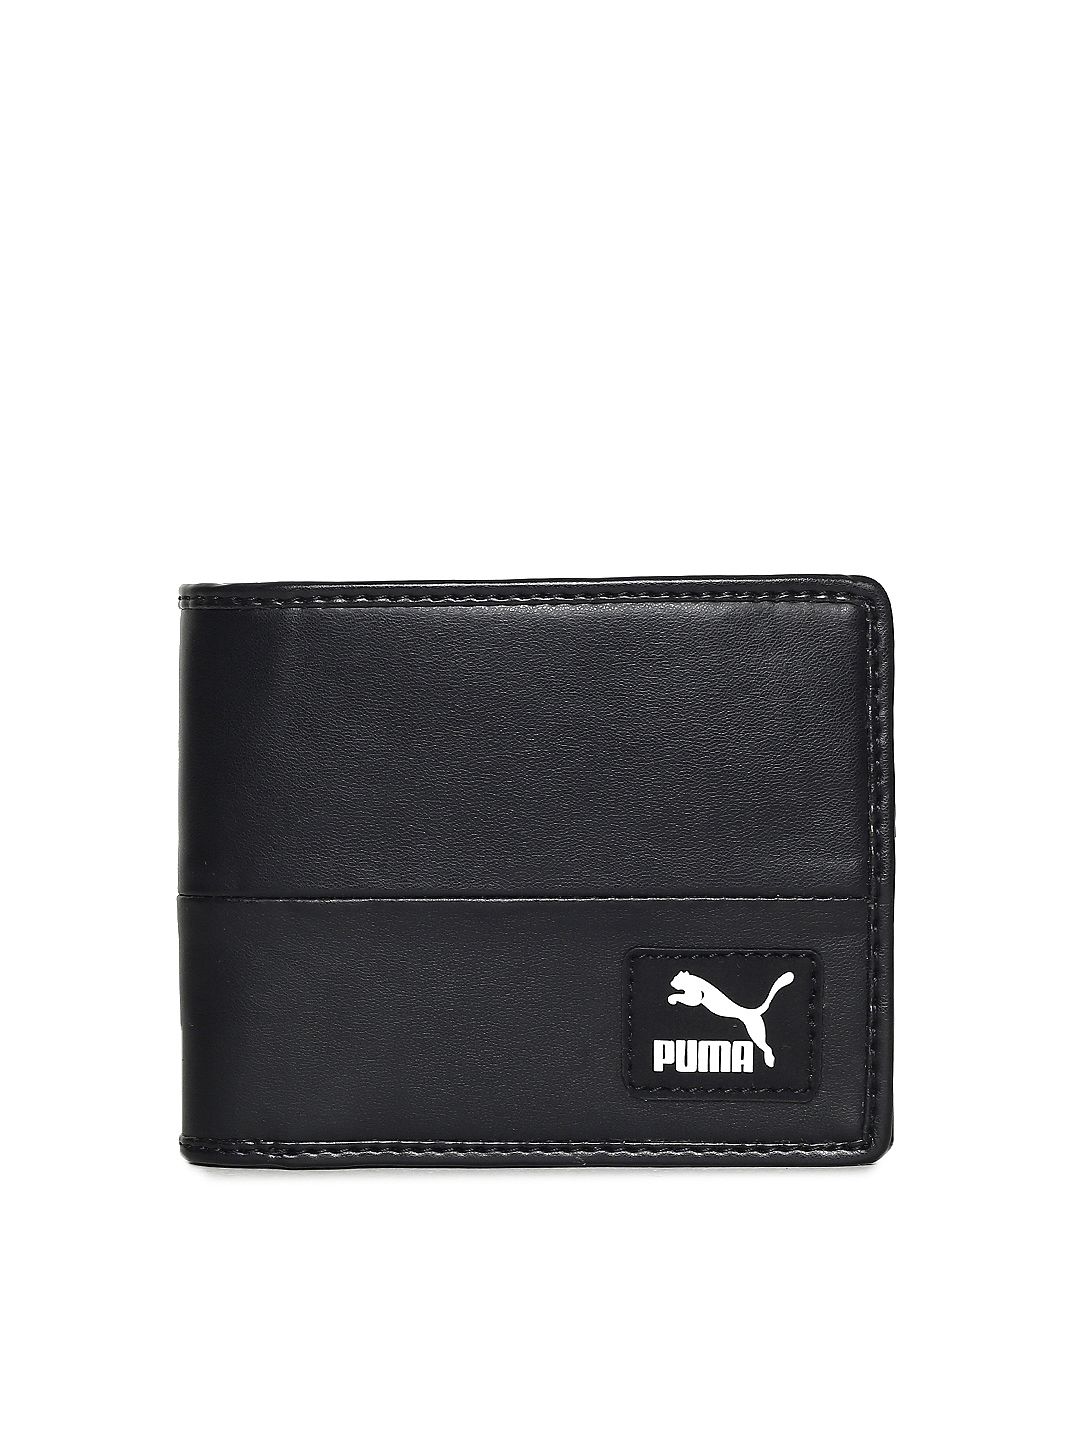 puma wallets india